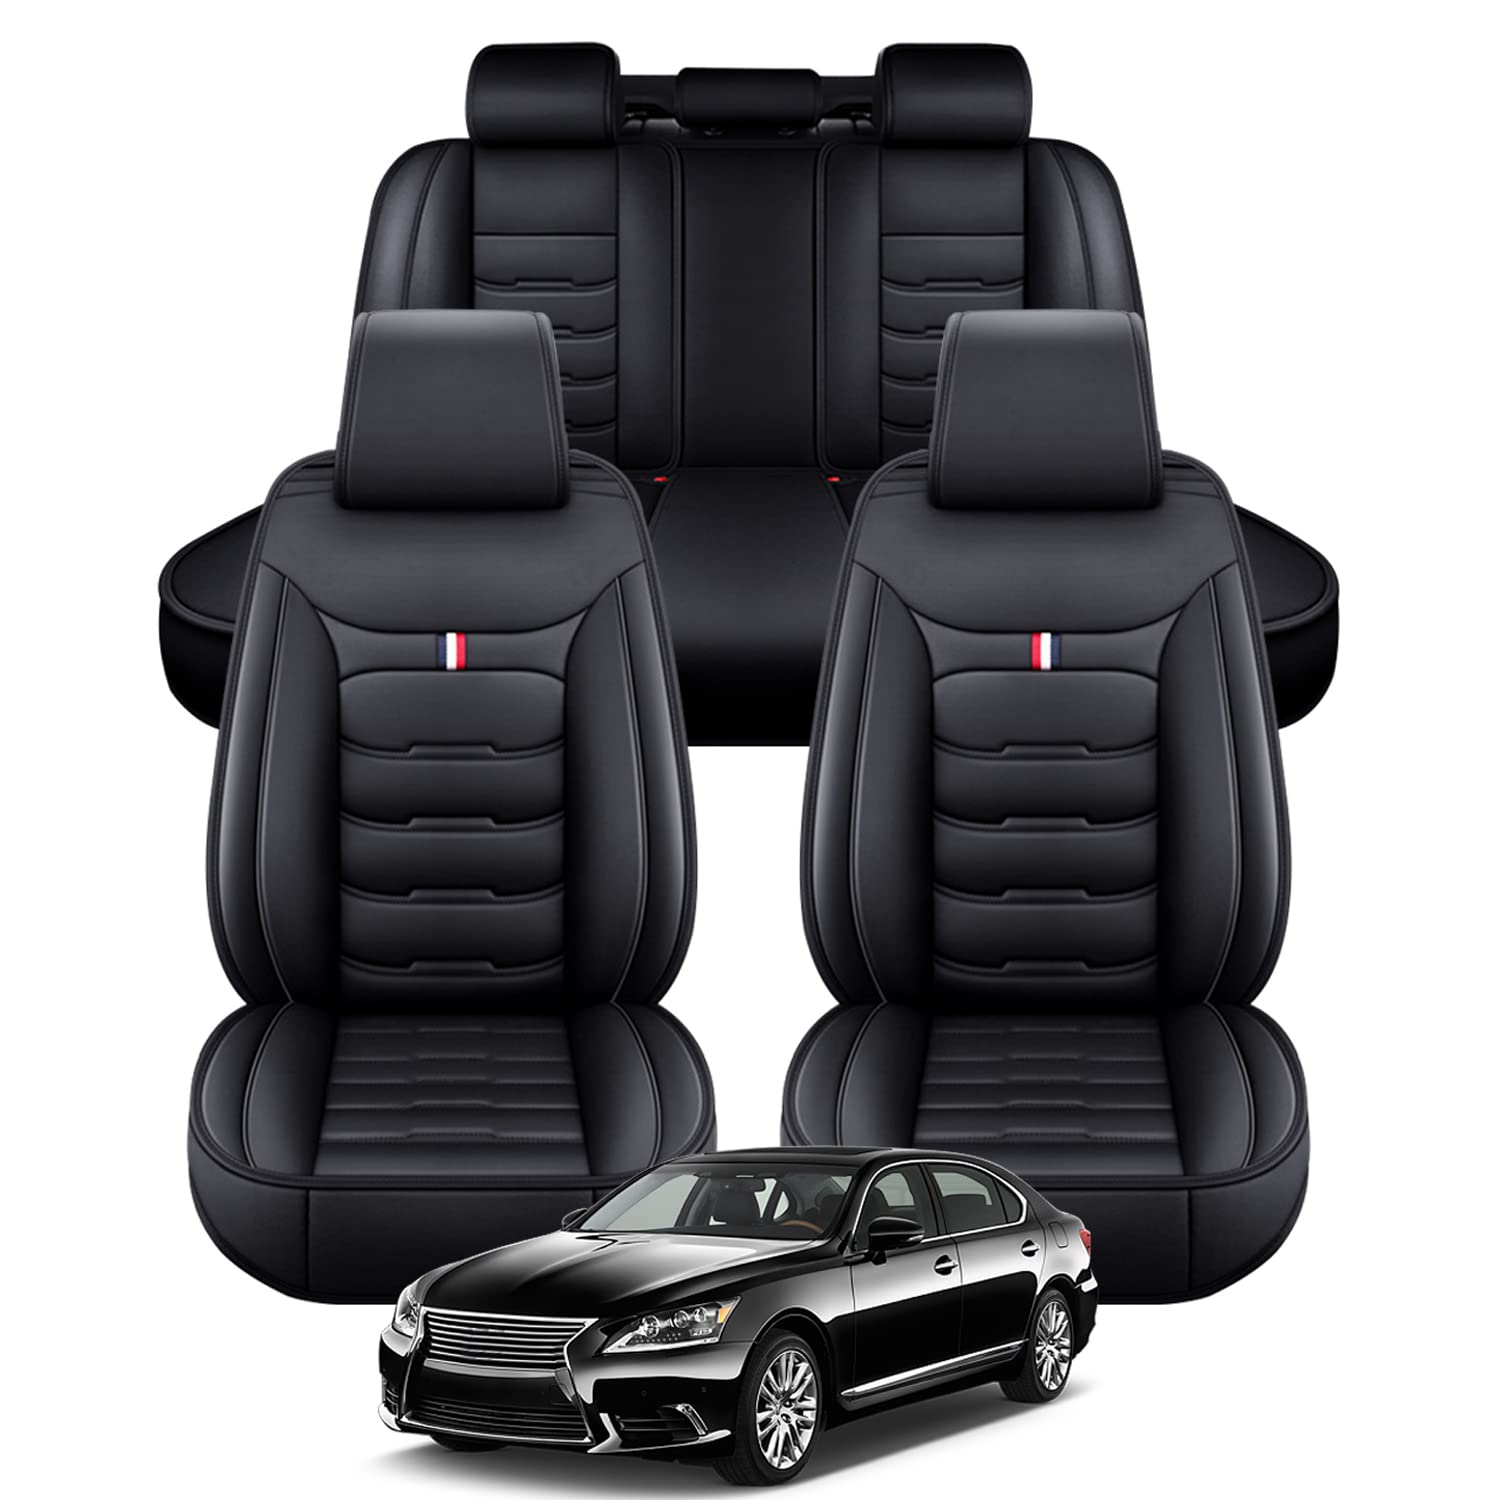 Yajomi Custom Car Seat Covers Full Set for KIA Amanti 2004-2009 Leather Car  Seat Covers